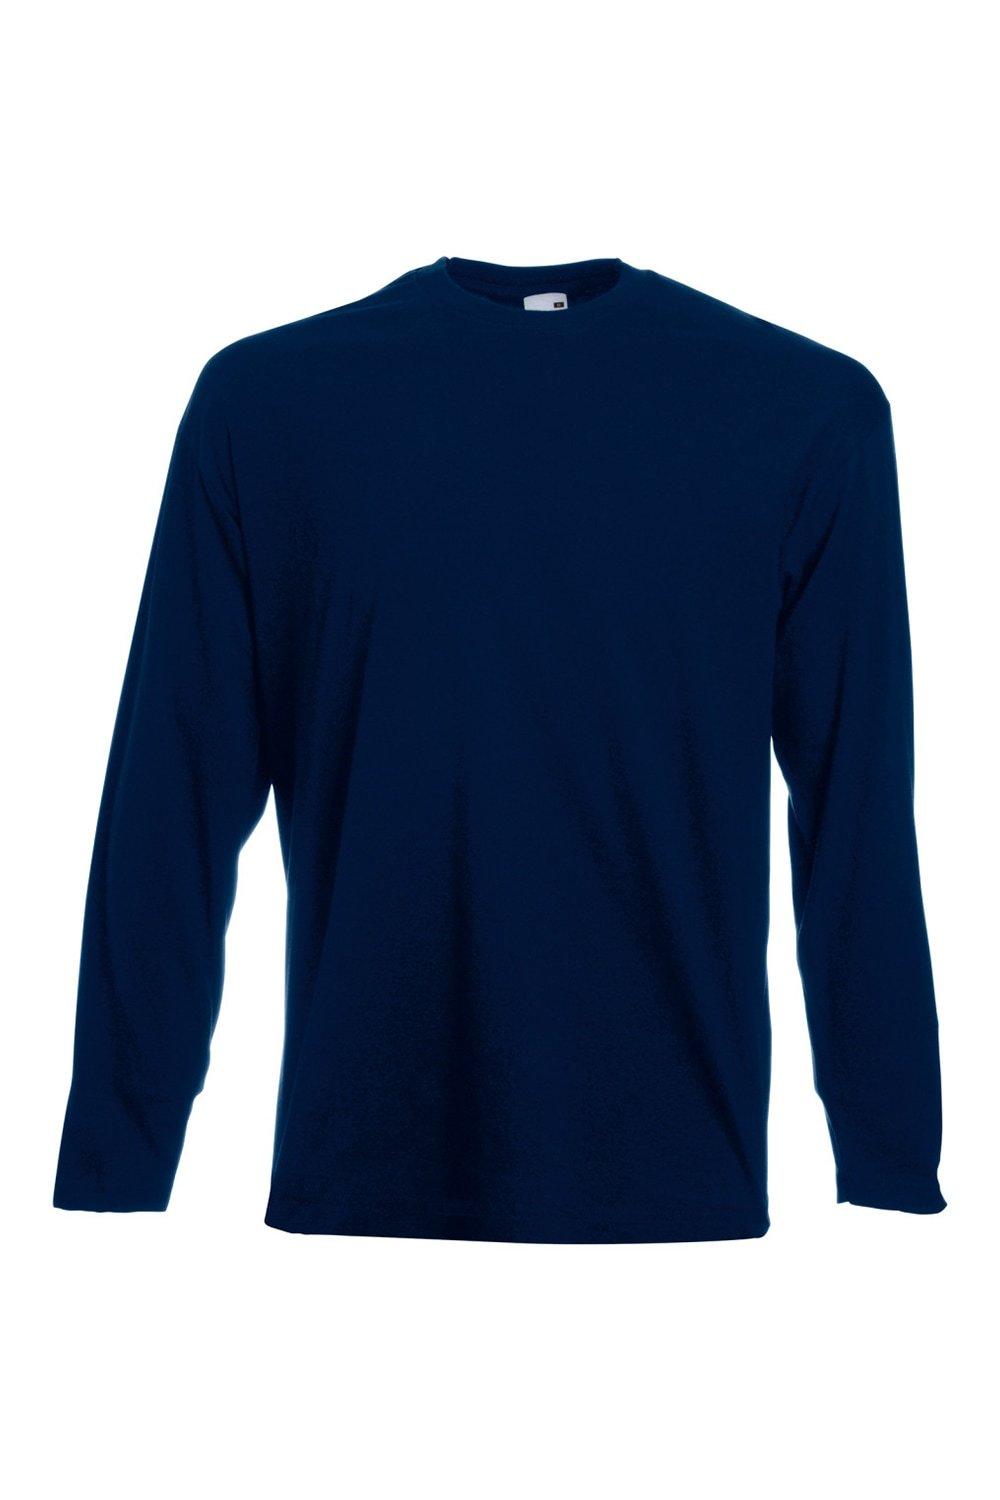 Повседневная футболка Value с длинным рукавом Universal Textiles, синий мужская футболка йога 2xl серый меланж